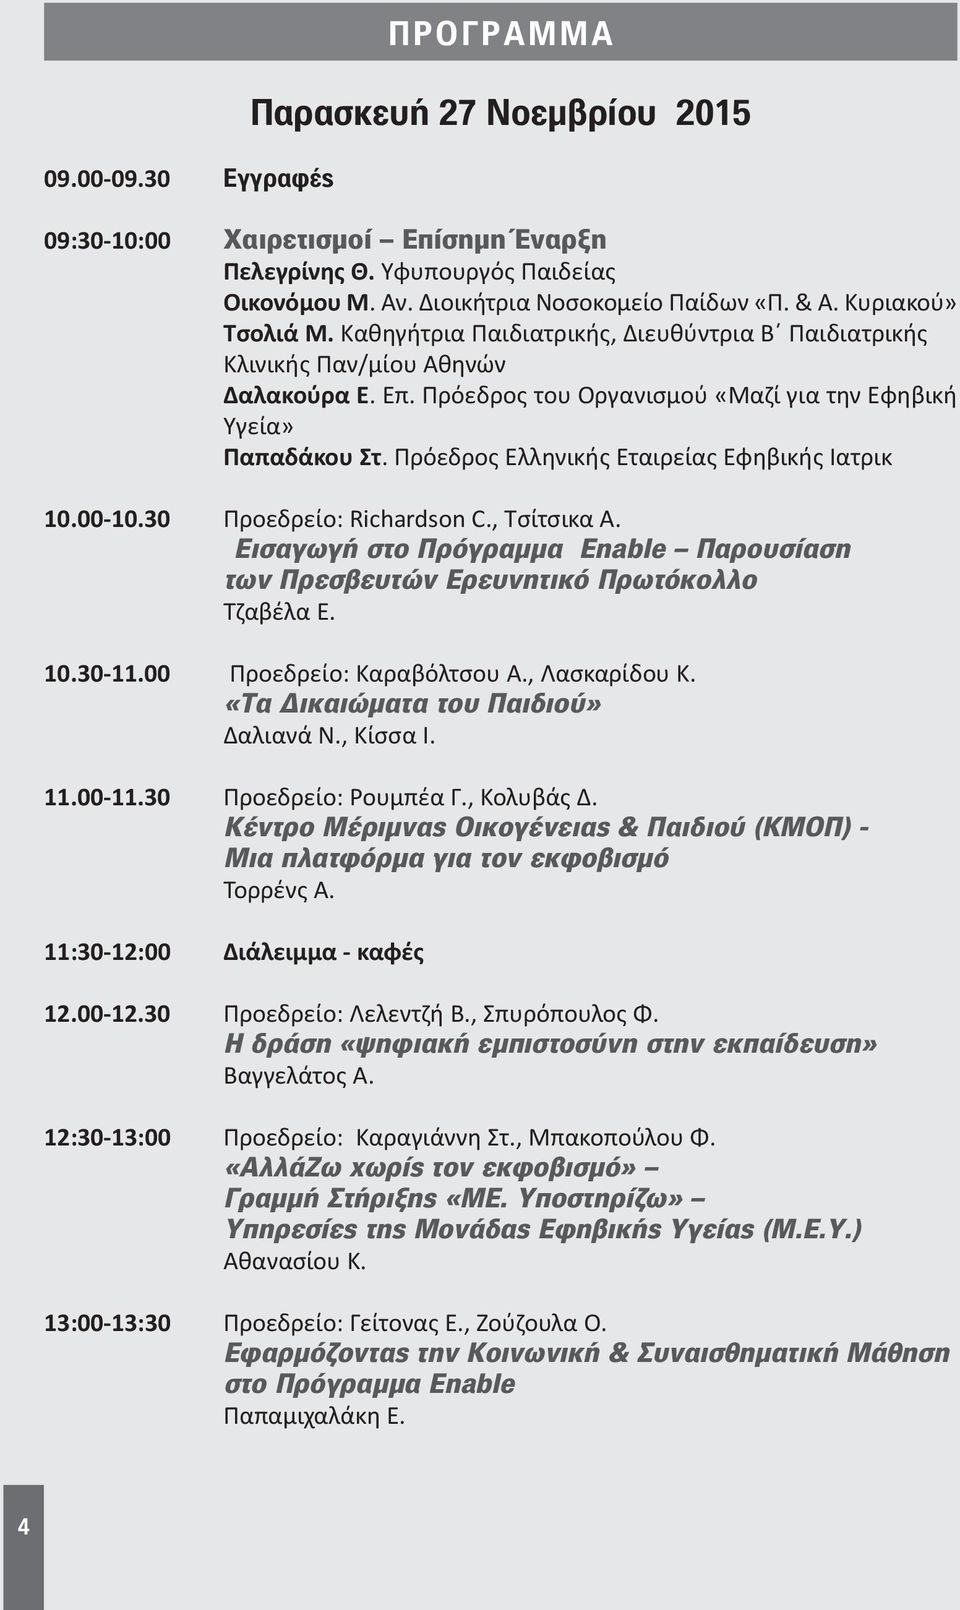 Πρόεδρος Ελληνικής Εταιρείας Εφηβικής Ιατρικ 10.00-10.30 Προεδρείο: Richardson C., Τσίτσικα Α. Εισαγωγή στο Πρόγραμμα Enable Παρουσίαση των Πρεσβευτών Ερευνητικό Πρωτόκολλο Τζαβέλα Ε. 10.30-11.